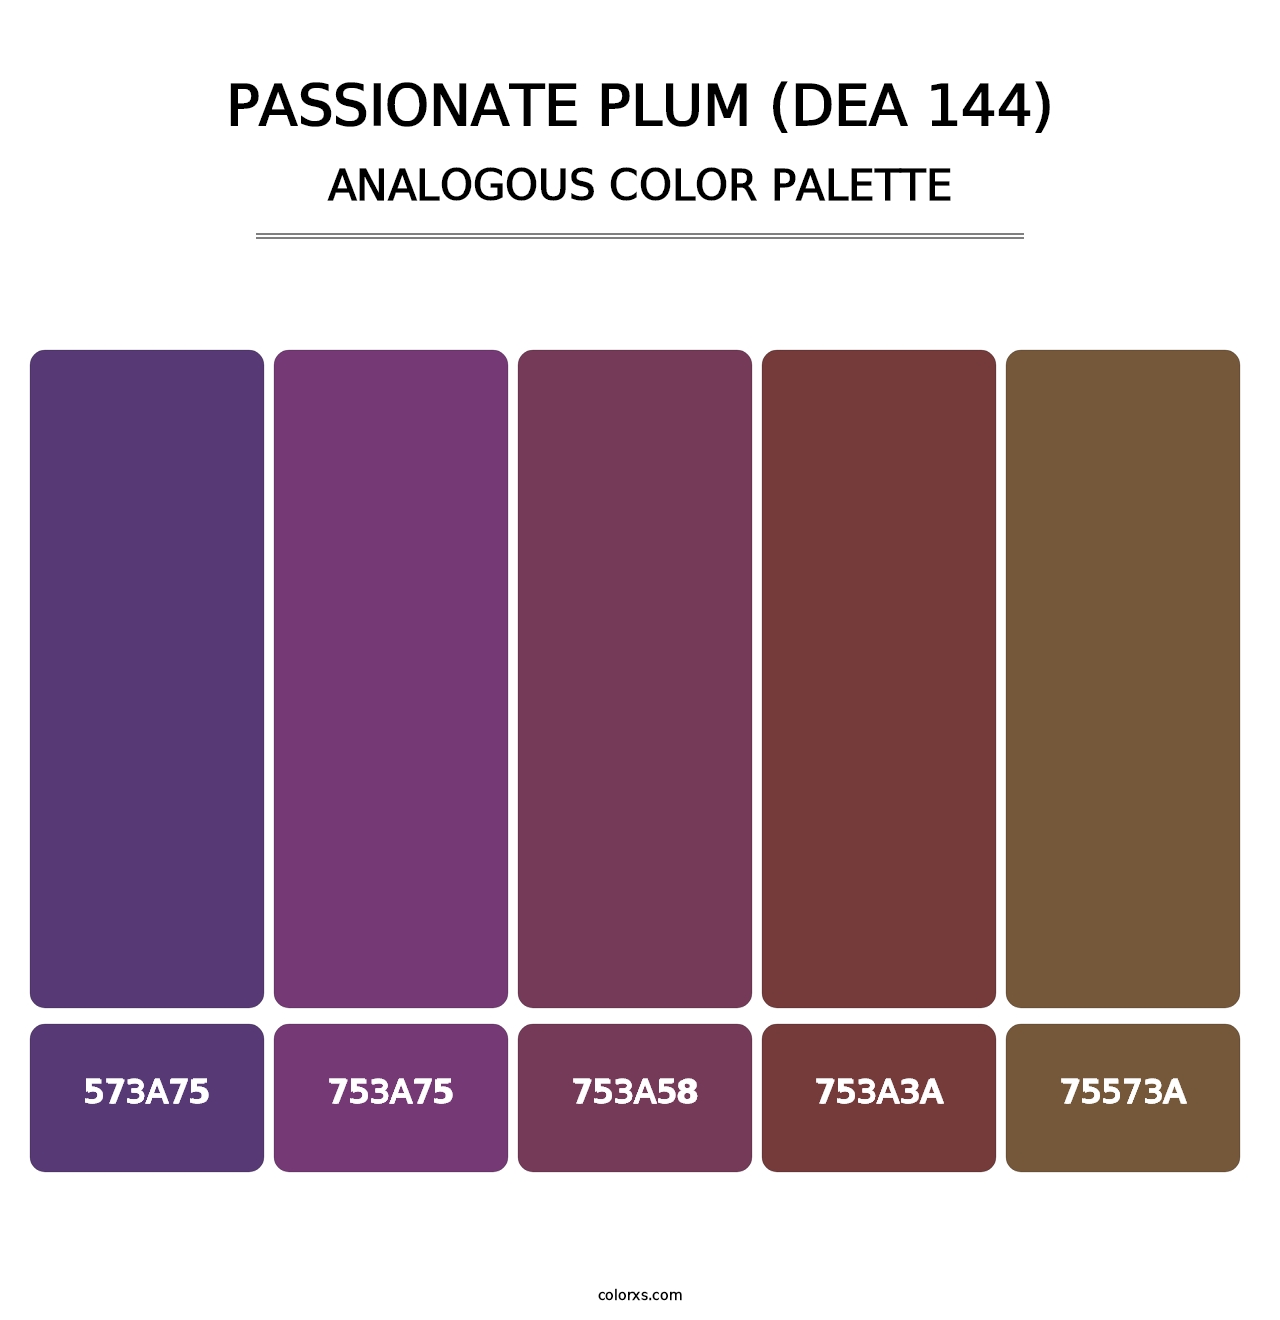 Passionate Plum (DEA 144) - Analogous Color Palette